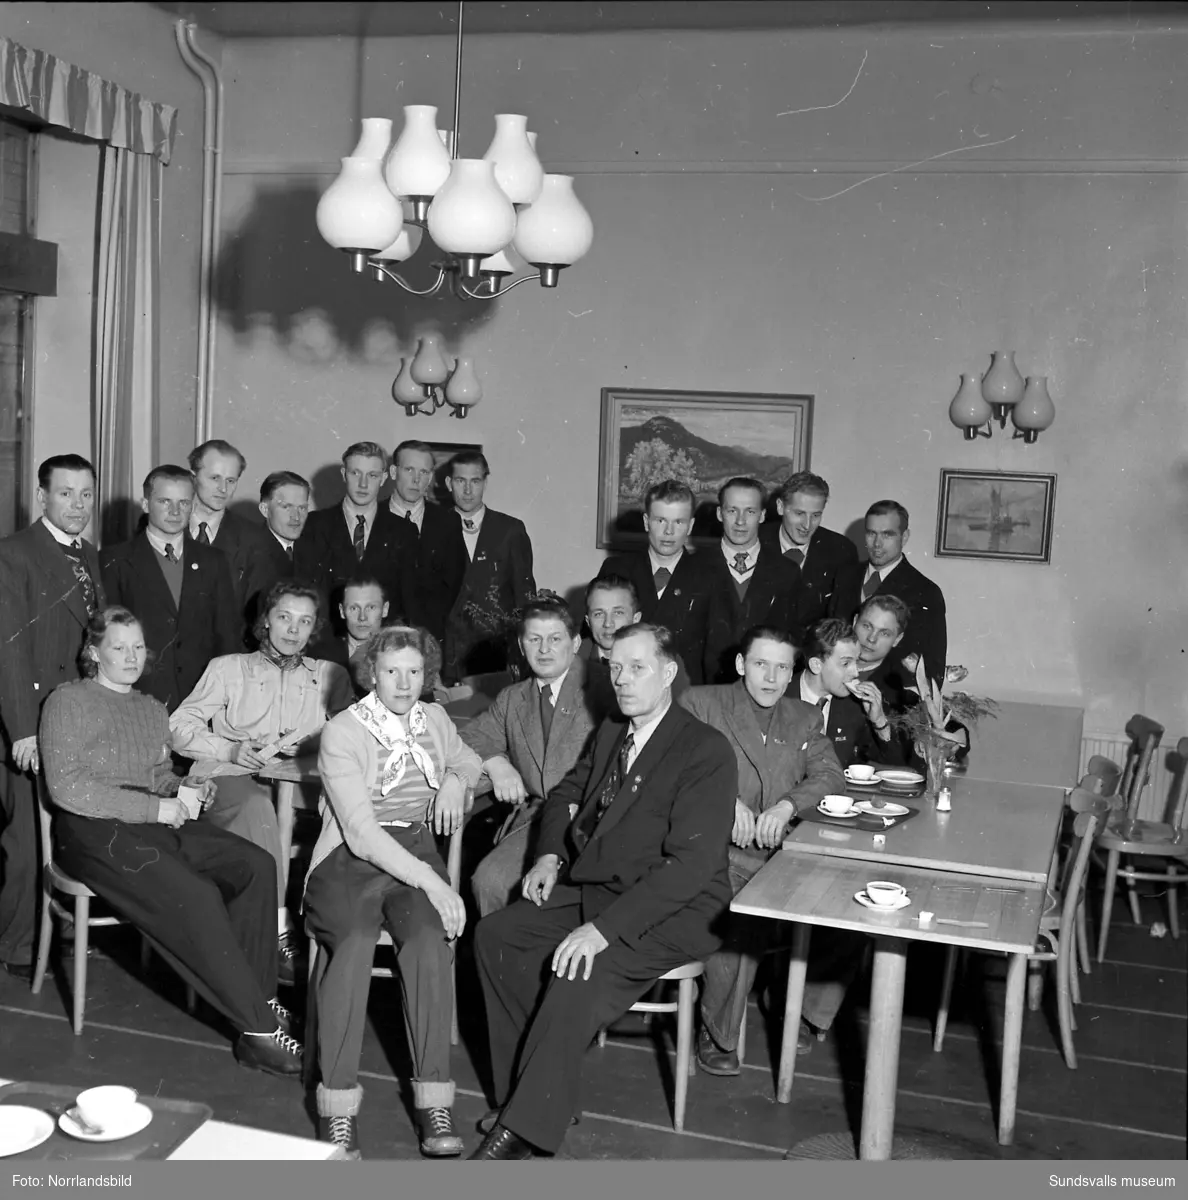 Svenska skidspelen 1951 avgjordes i Sundsvall. Den finska truppen har anlänt och passar på att ta en fika på KPS självservering.